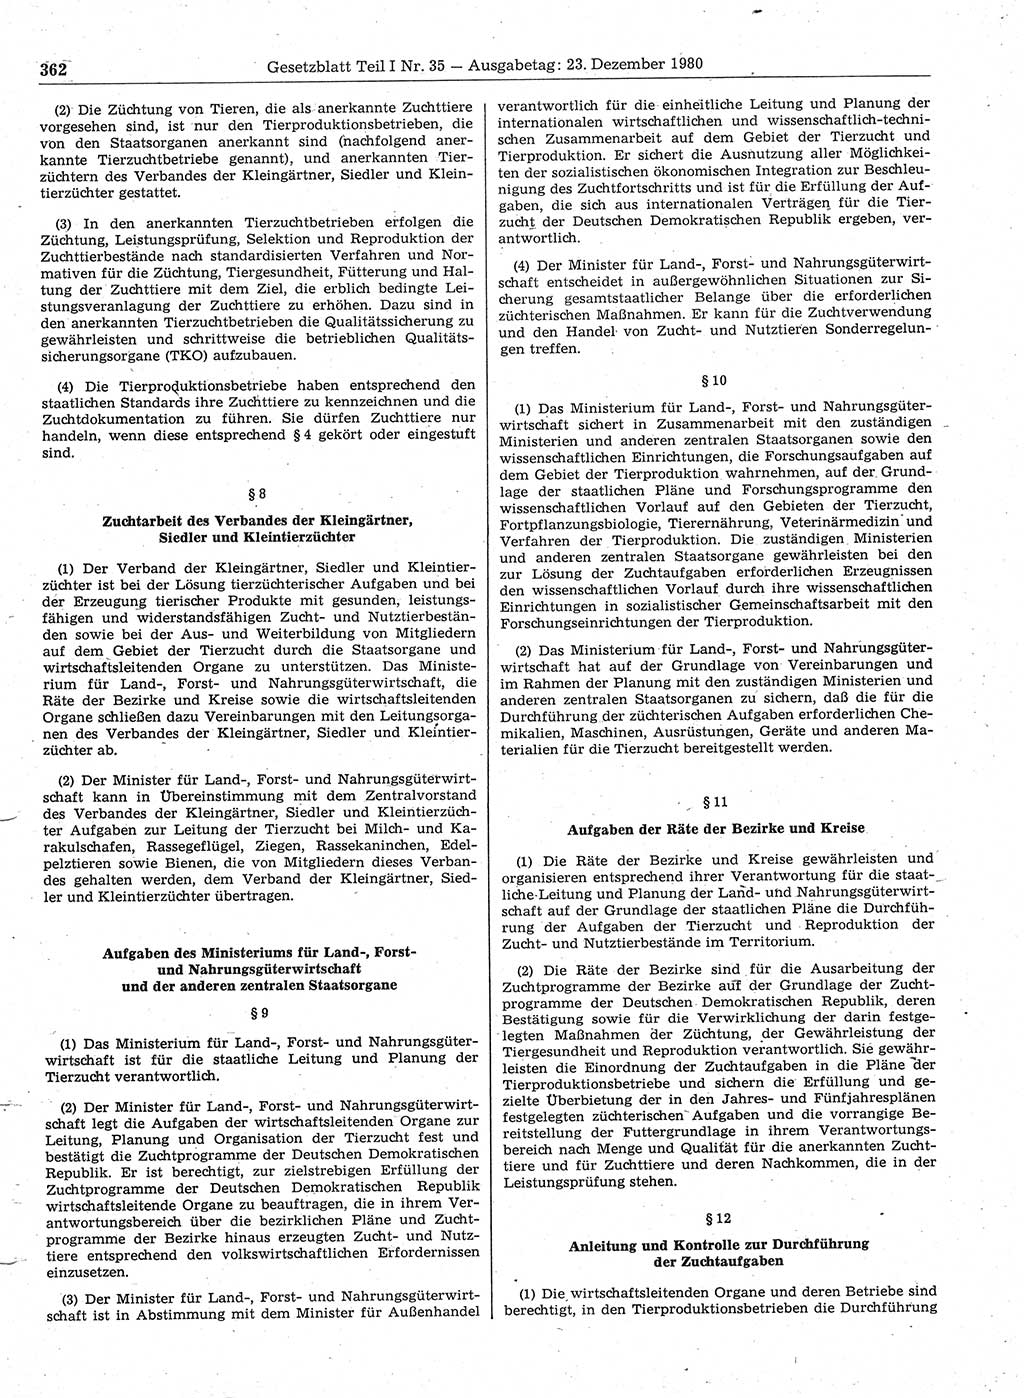 Gesetzblatt (GBl.) der Deutschen Demokratischen Republik (DDR) Teil Ⅰ 1980, Seite 362 (GBl. DDR Ⅰ 1980, S. 362)